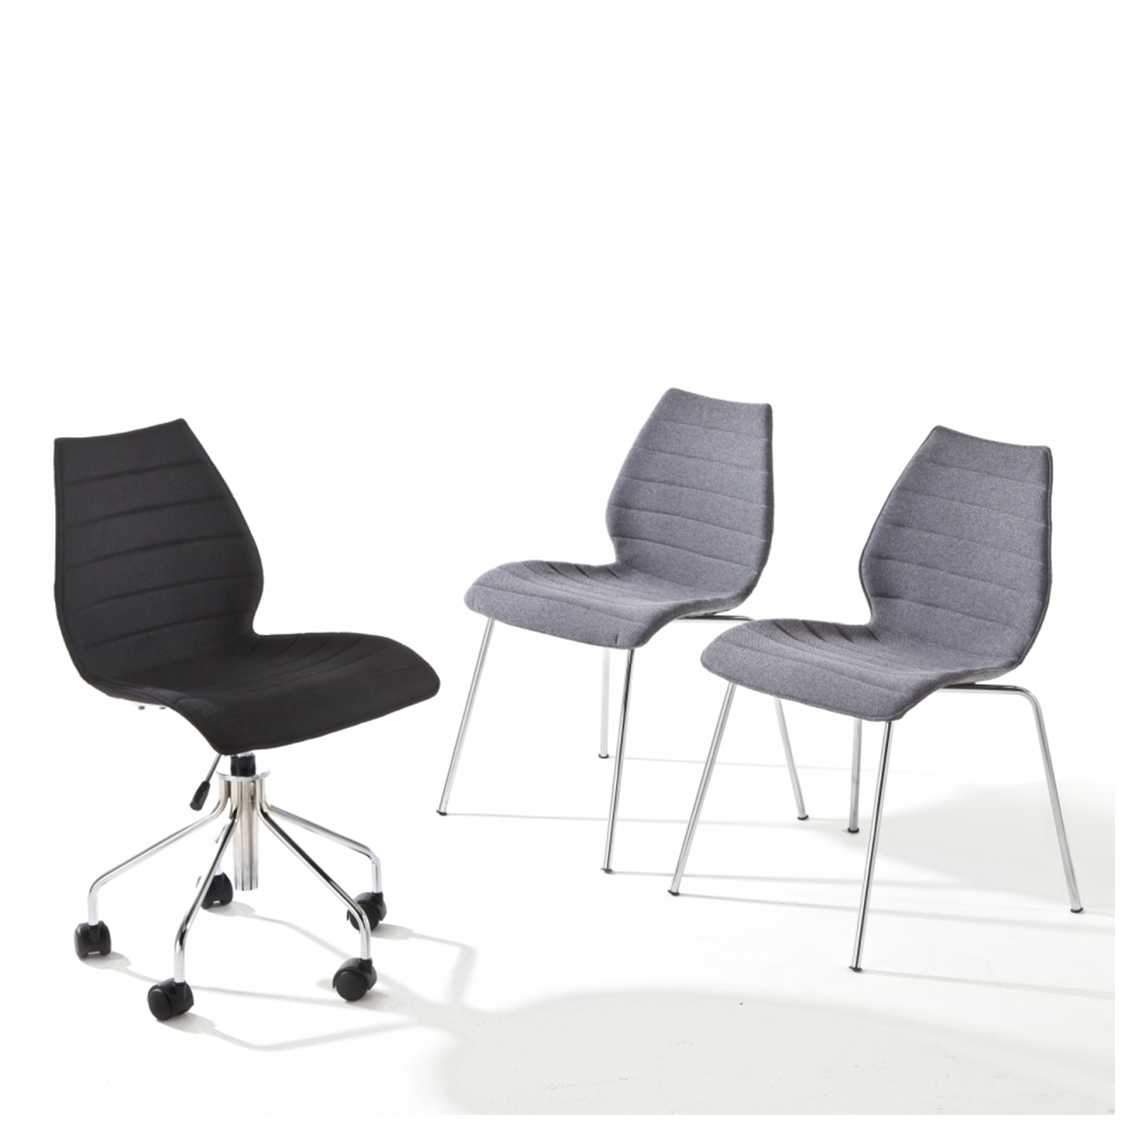 https://www.fundesign.nl/media/catalog/product/k/a/kartell-maui-soft-stoel_1_6.jpg